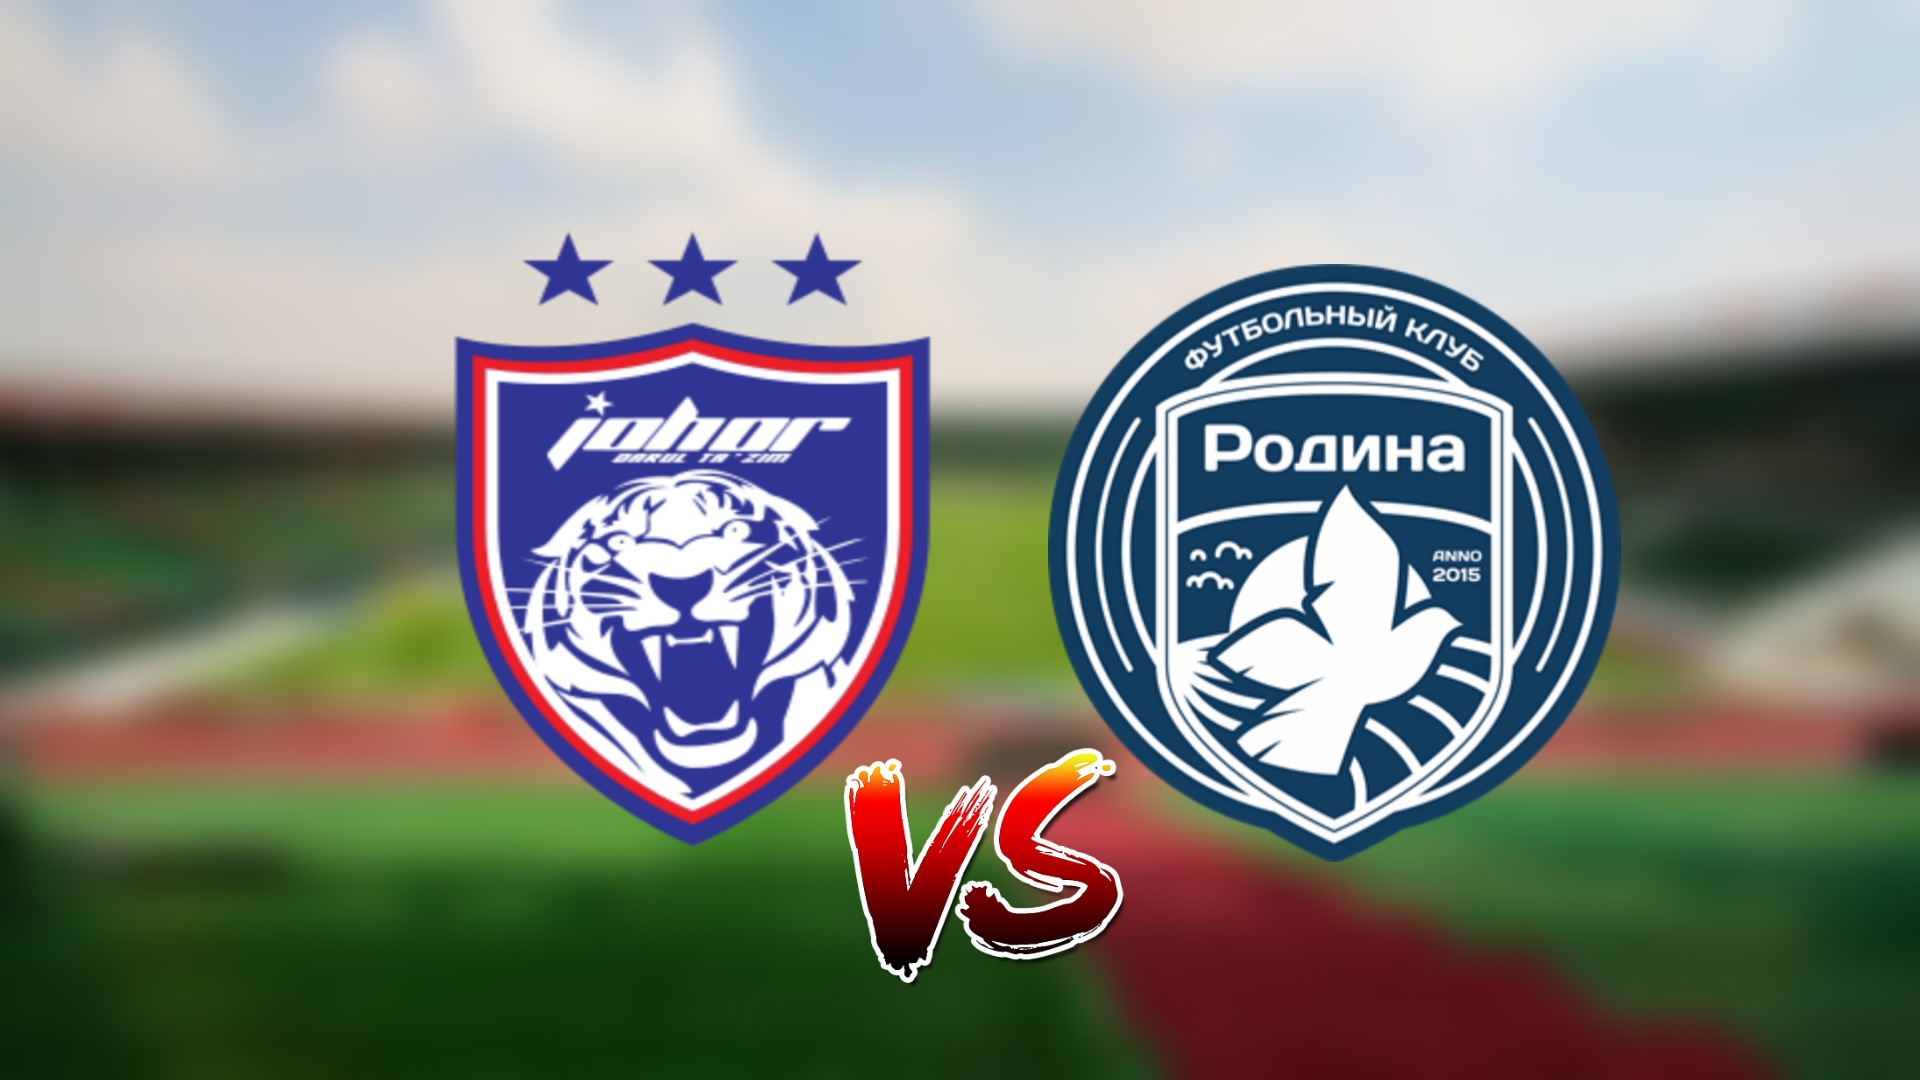 Live Streaming JDT vs Rodina Moscow Friendly Match 2.2.2022